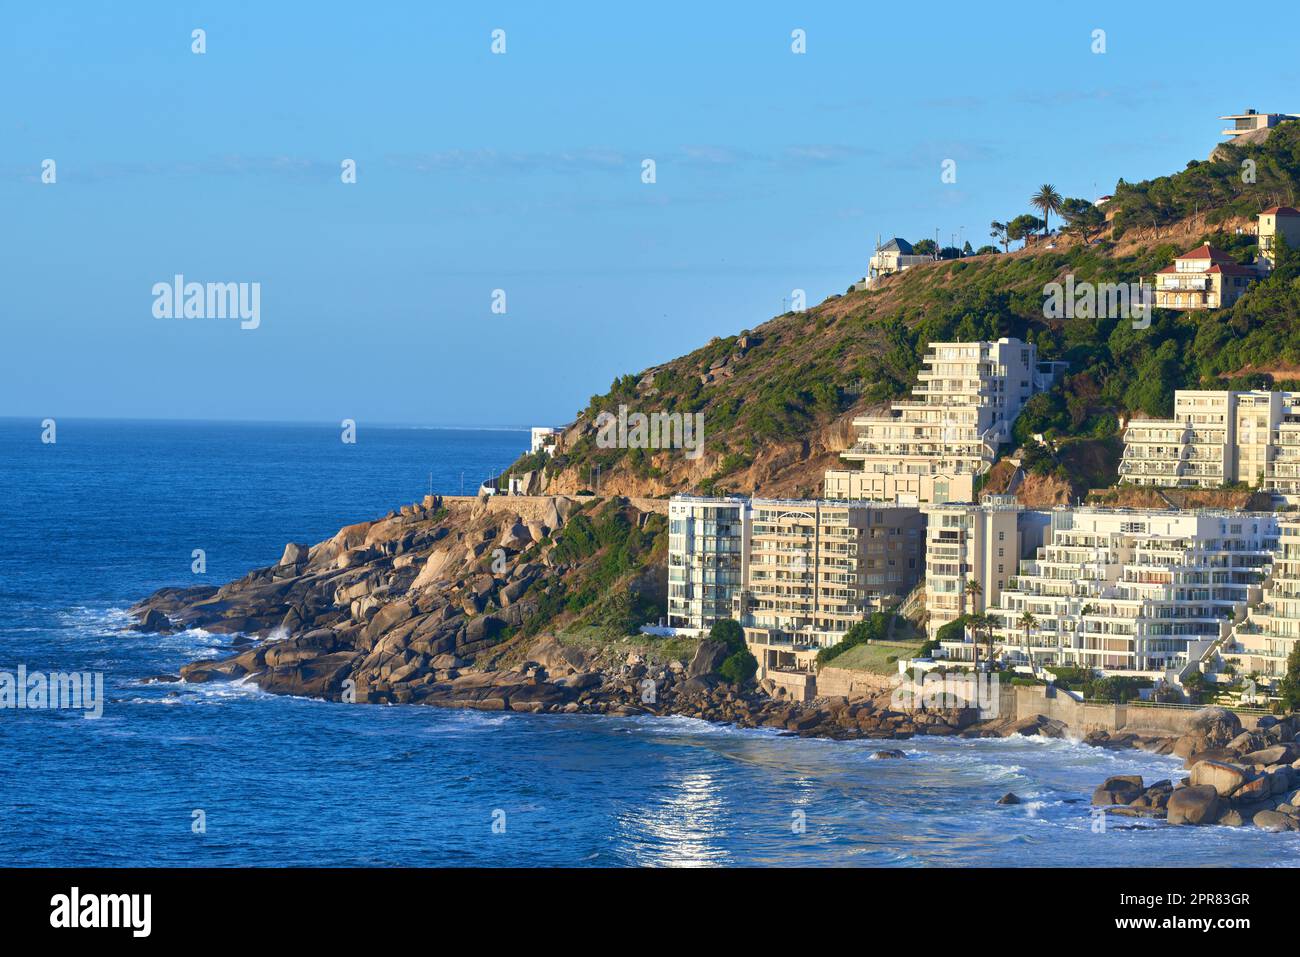 Clifton, le Cap, Afrique du Sud panorama paysage marin avec ciel bleu clair, hôtels, et immeubles d'appartements en arrière-plan. Aménagement de logements donnant sur la magnifique péninsule de l'océan bleu Banque D'Images